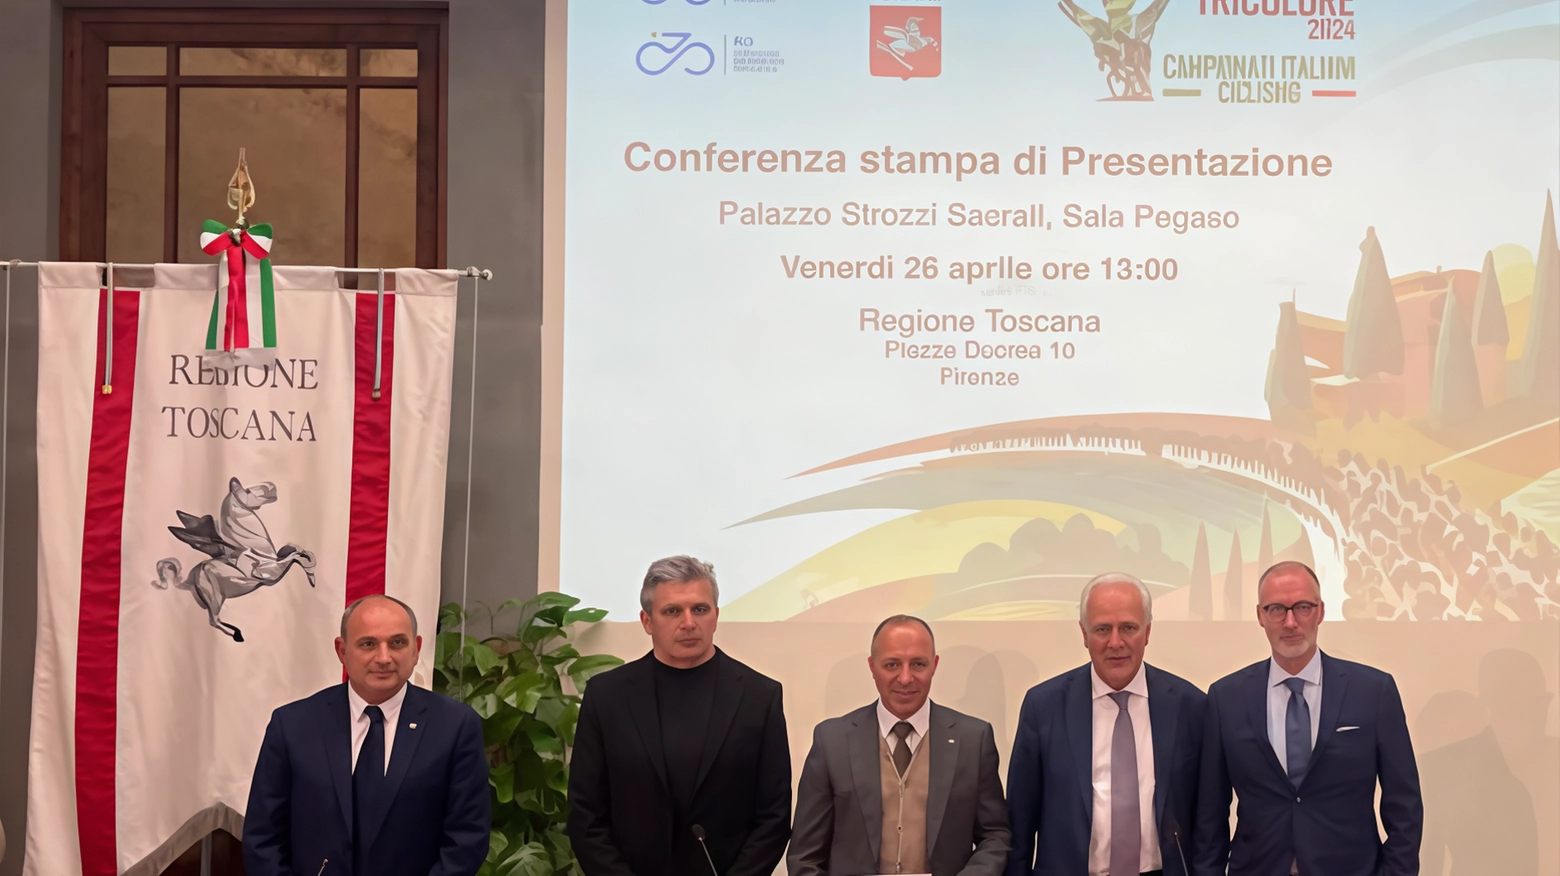 La Toscana si conferma leader nel ciclismo con il programma "Toscana Tricolore 2024", che celebra grandi campioni e presenta otto prestigiose manifestazioni, tra cui il Campionato Italiano professionisti e prove su pista e fuoristrada. Un riconoscimento alla regione per l'organizzazione impeccabile.